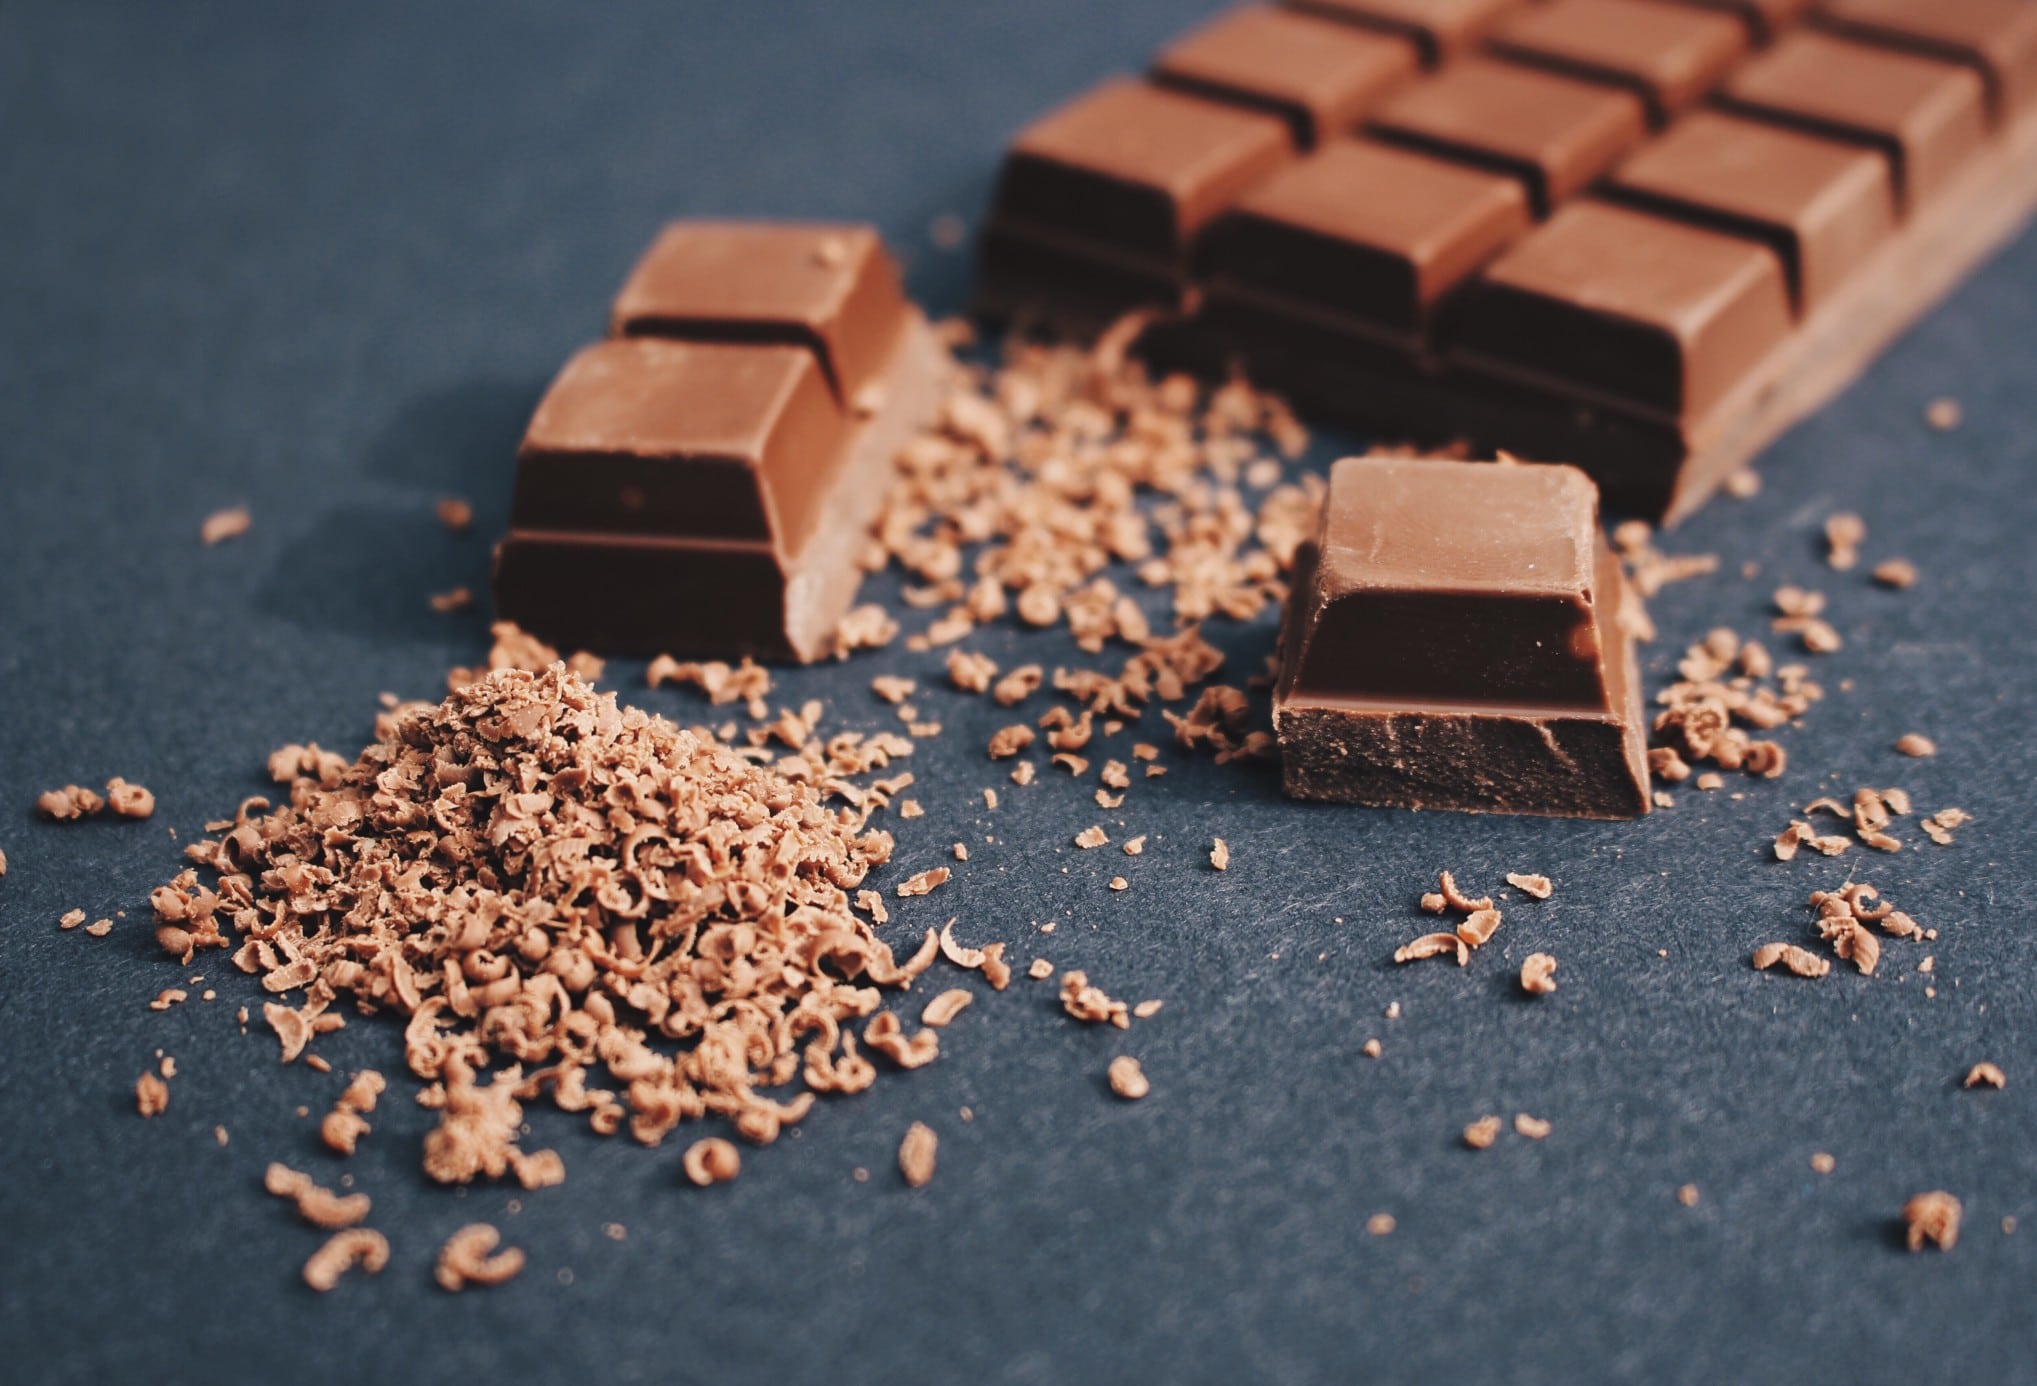 Une barre de chocolat avec un morceau cassé, entourée de copeaux de chocolat sur une surface sombre, éveille l'envie.